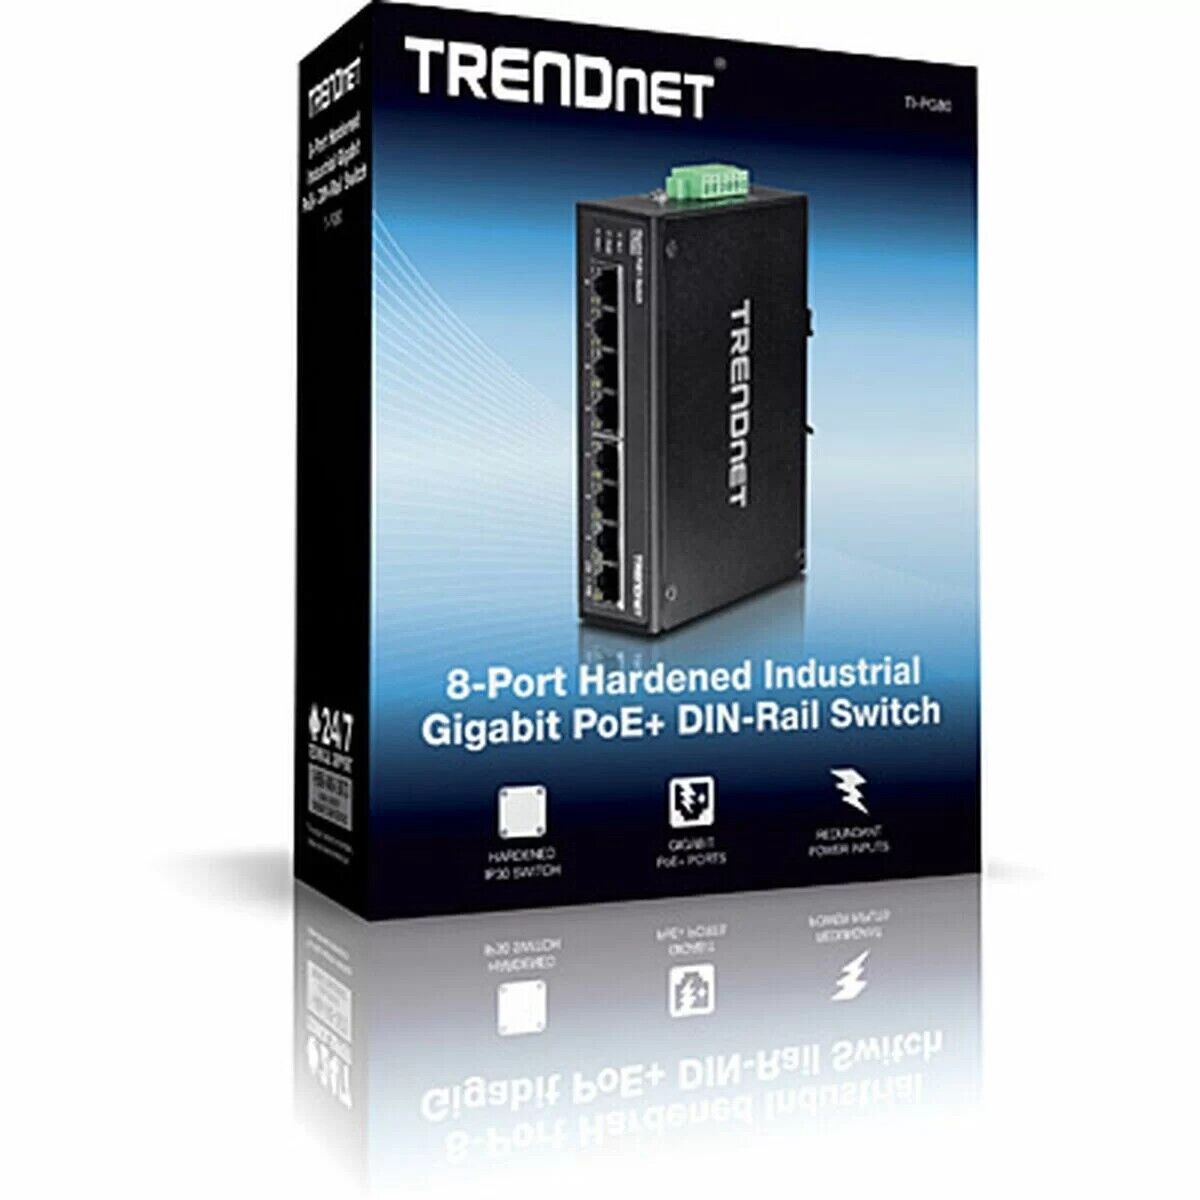 TRENDnet TI-PG80 8-port hardened industrial gigabit PoE+ DIN-Rail switch